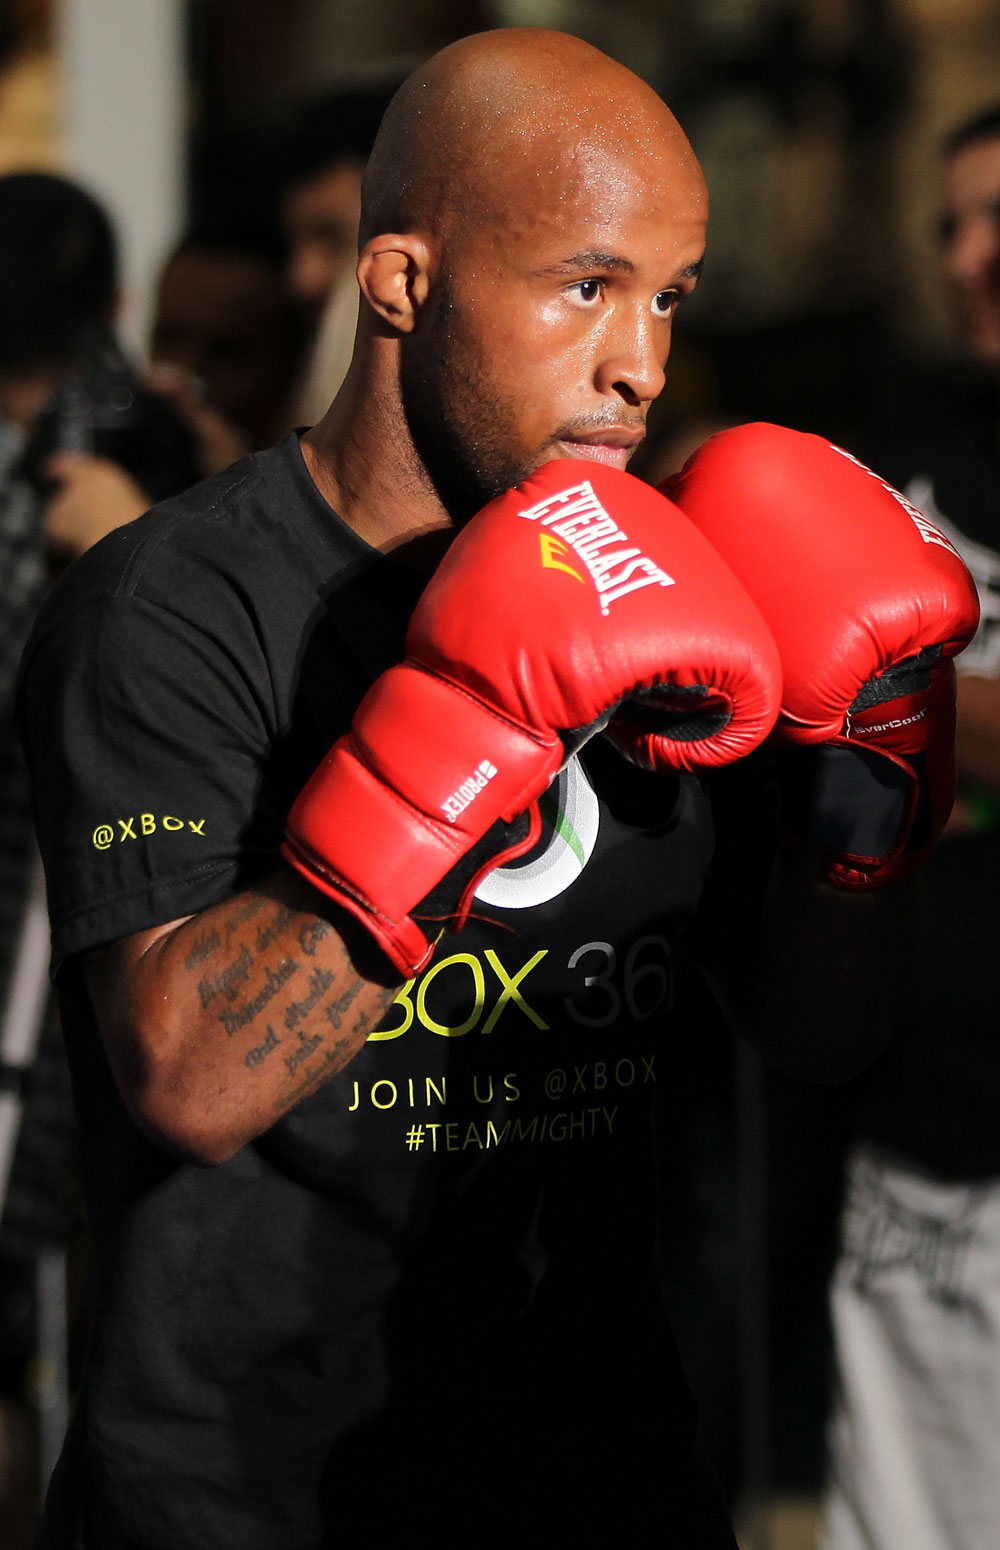 UFC flyweight Demetrious Johnson